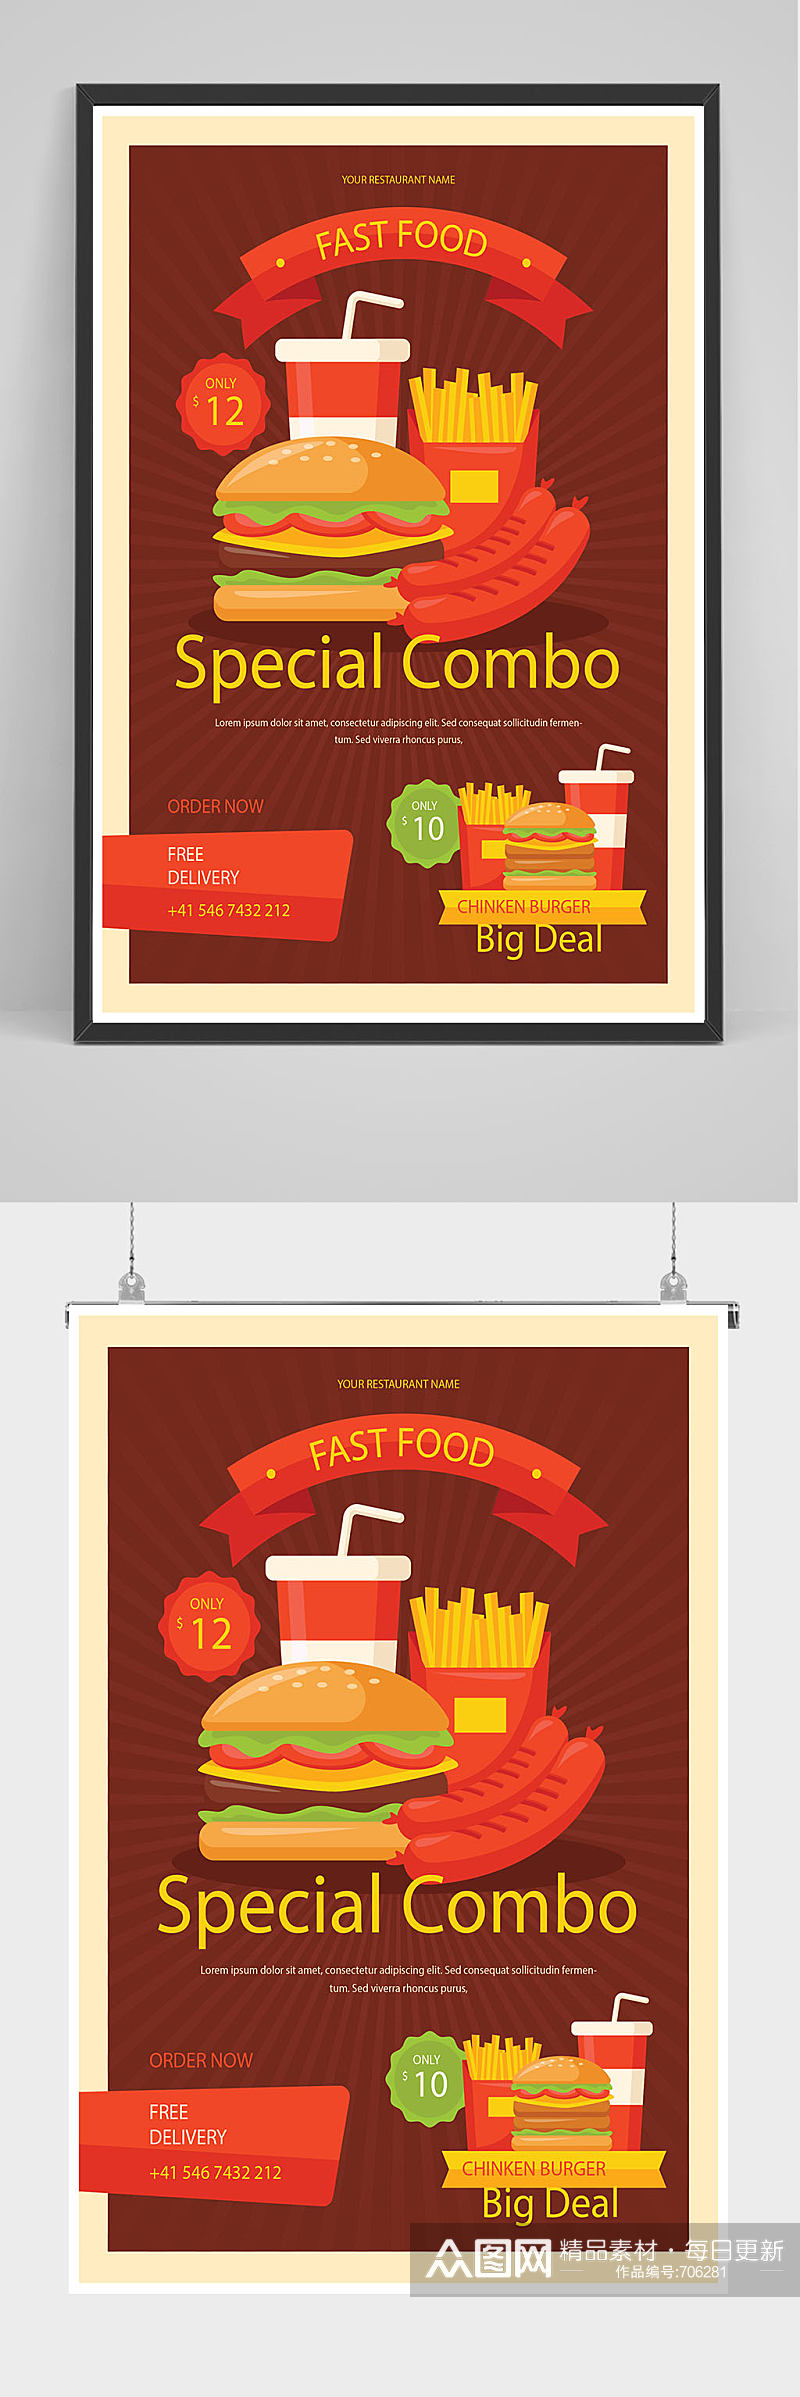 精品汉堡可乐薯条海报设计素材